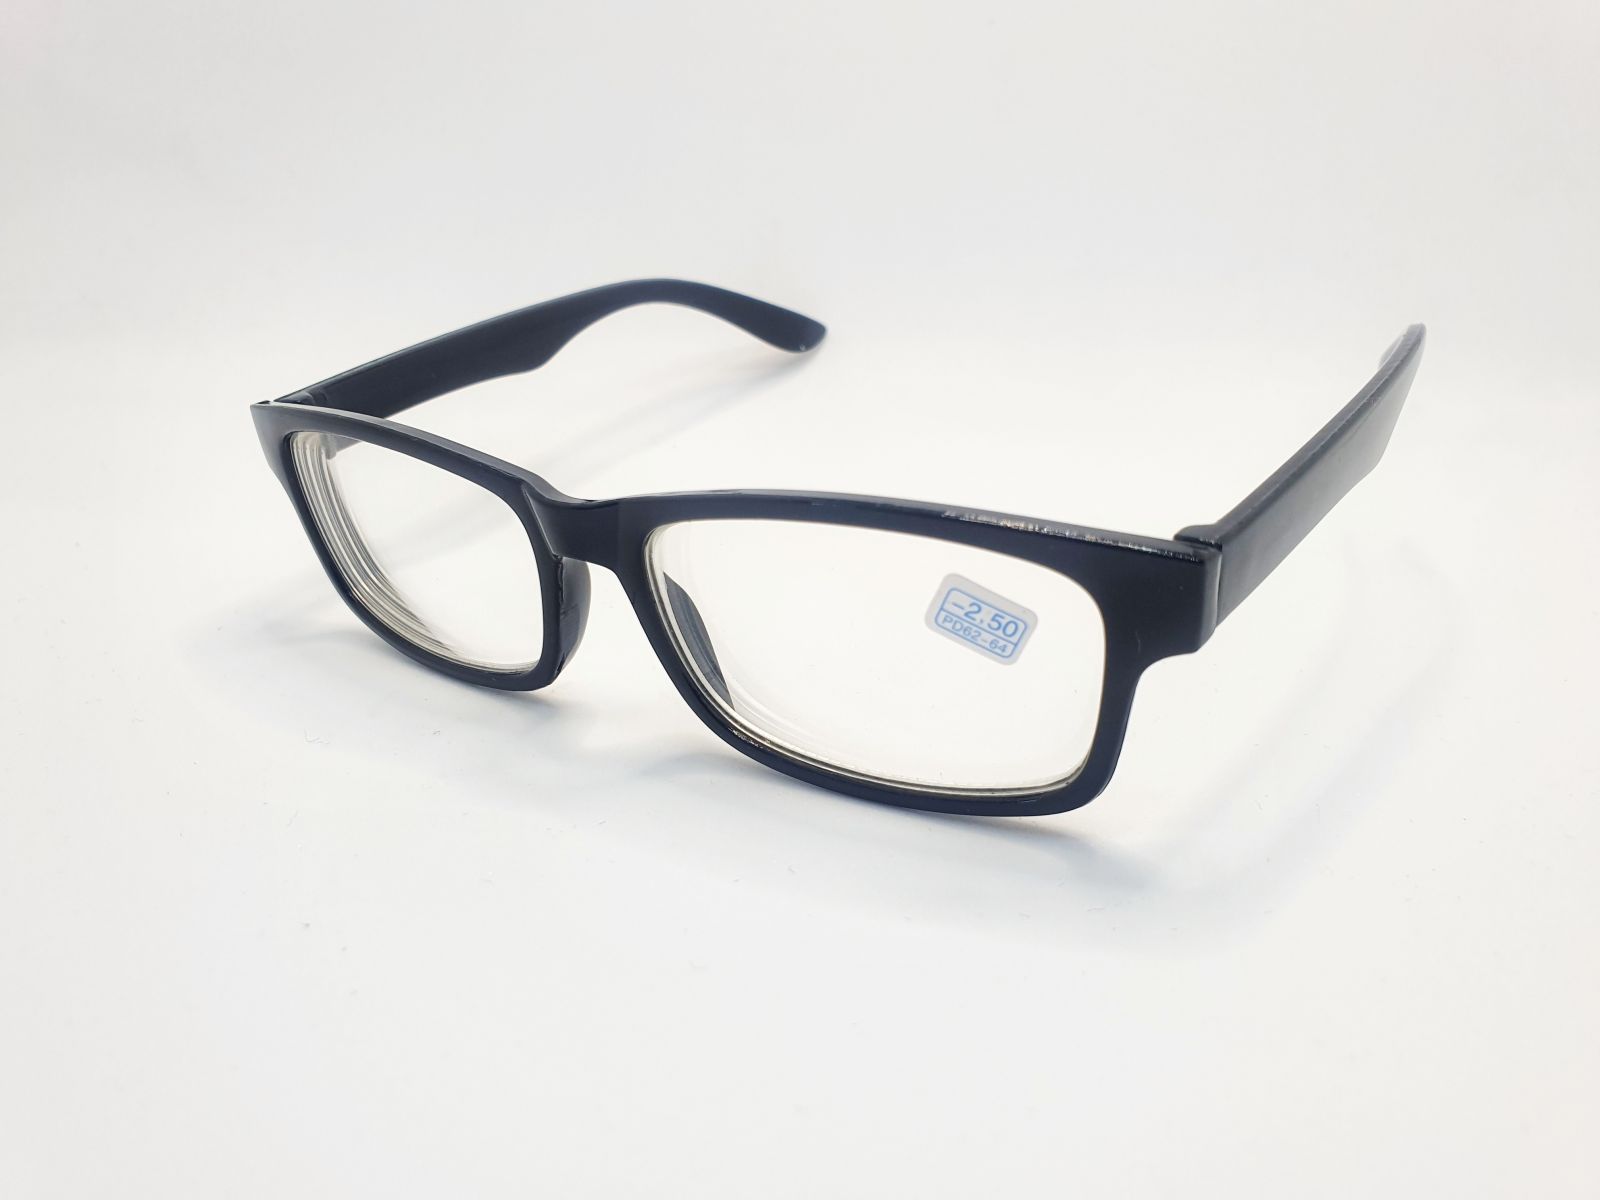 Dioptrické brýle na krátkozrakost 6242 / -4,00 BLACK